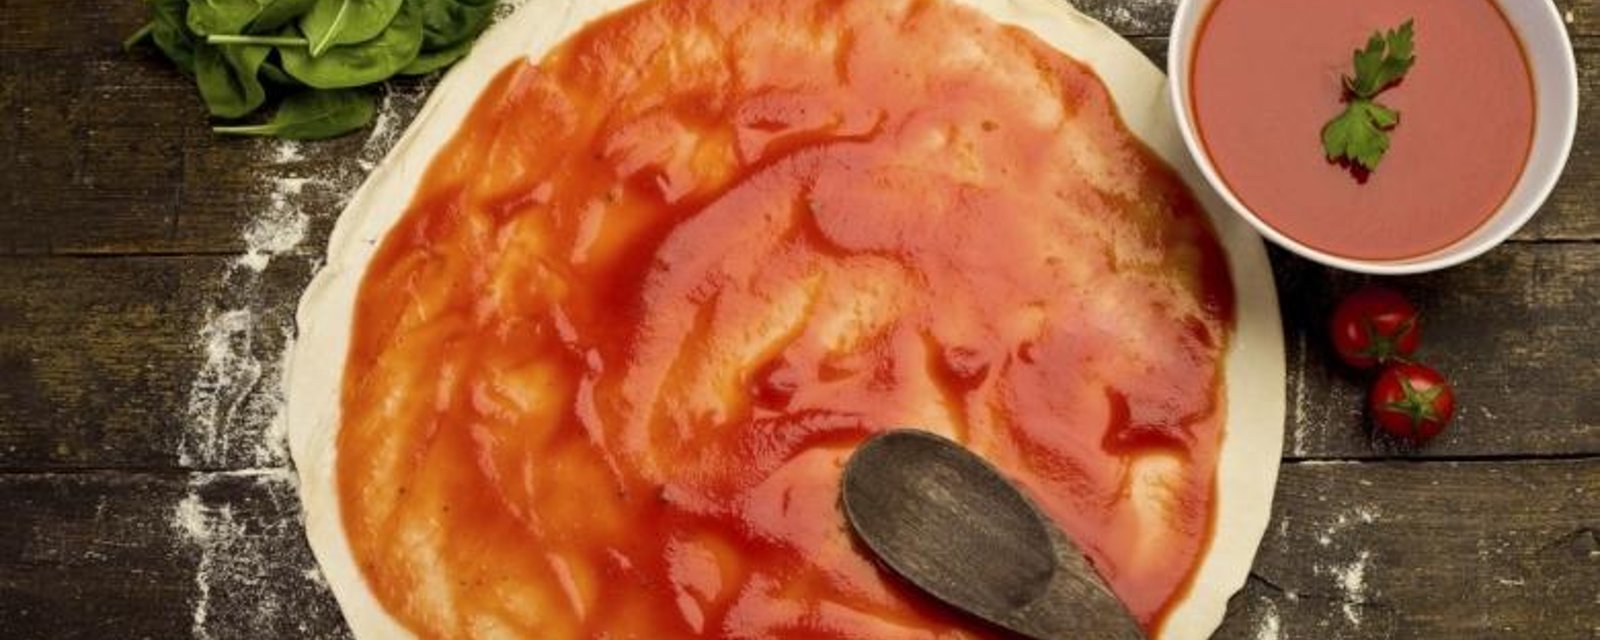 Transformez vos tomates fraîches en une délicieuse sauce à pizza maison!